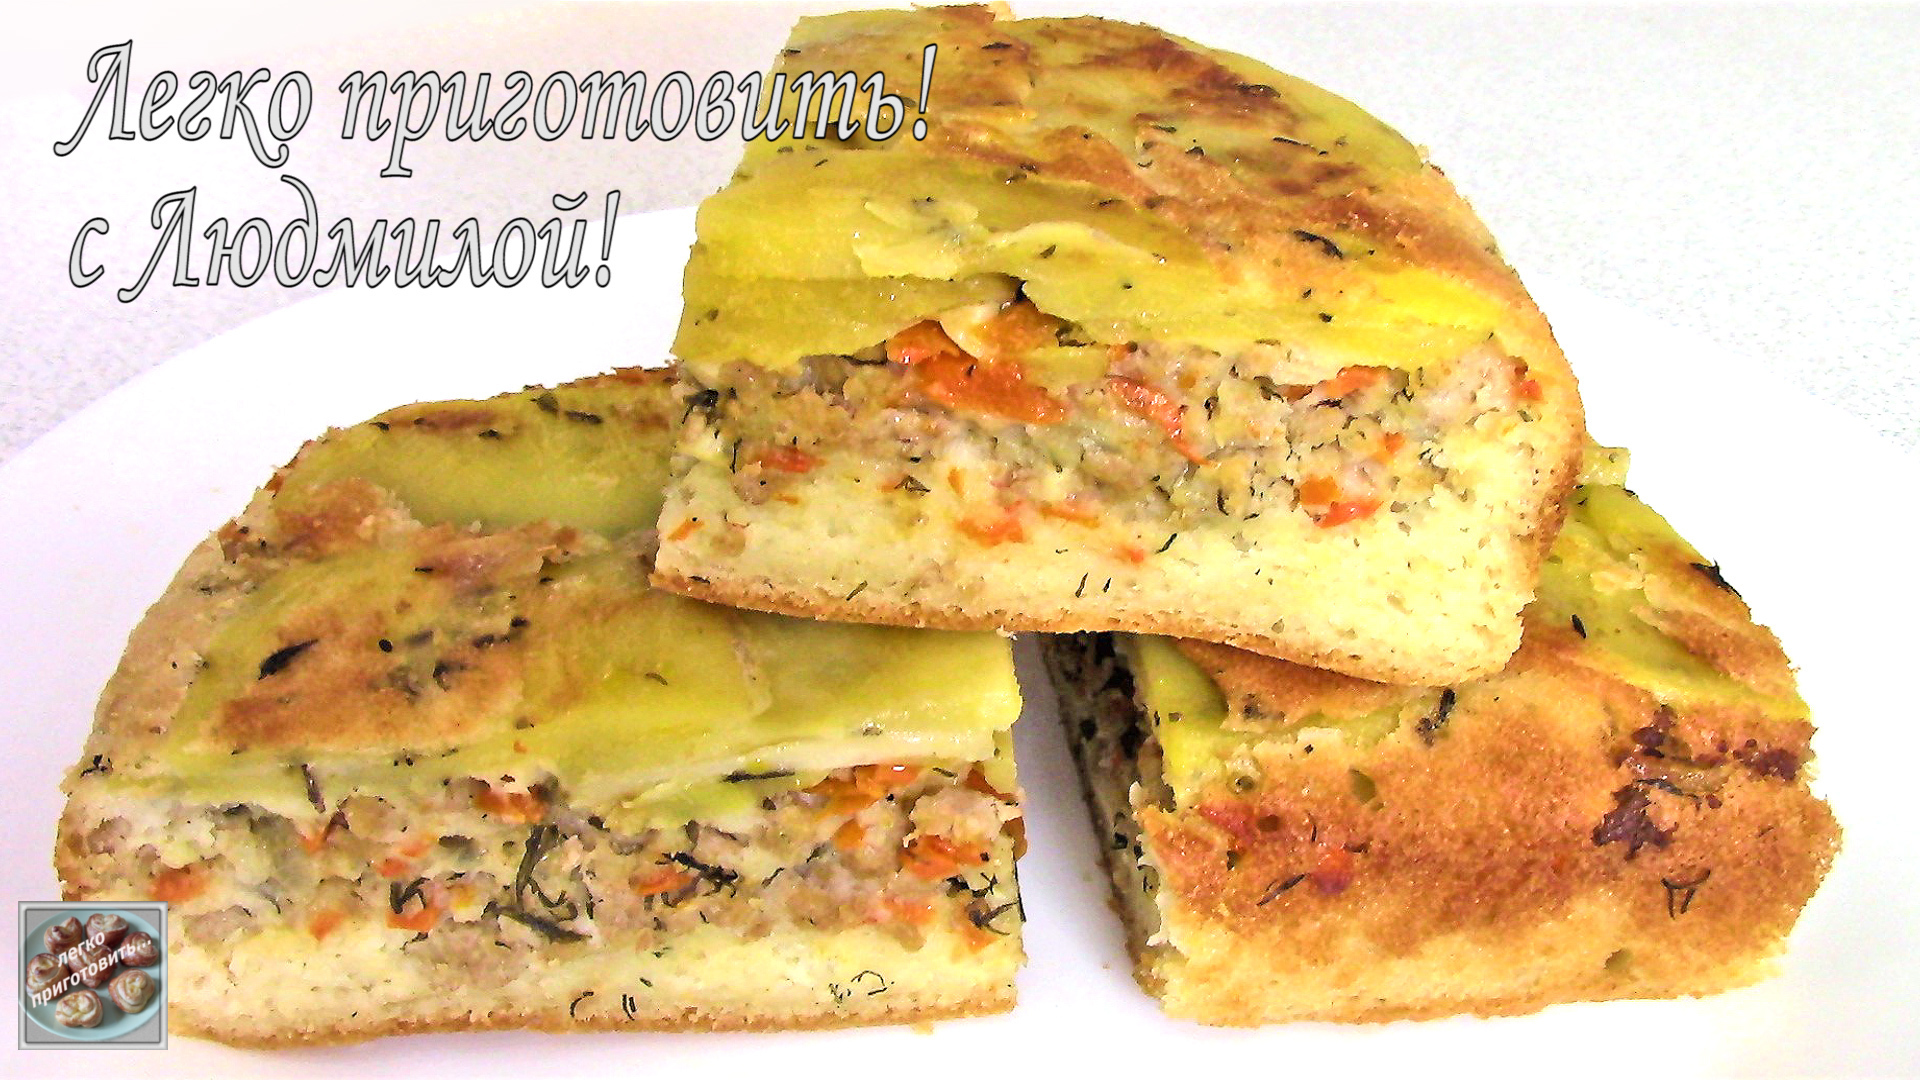 Пошаговый рецепт заливного пирога с фаршем и картошкой с фото за мин, автор Андрей - malino-v.ru